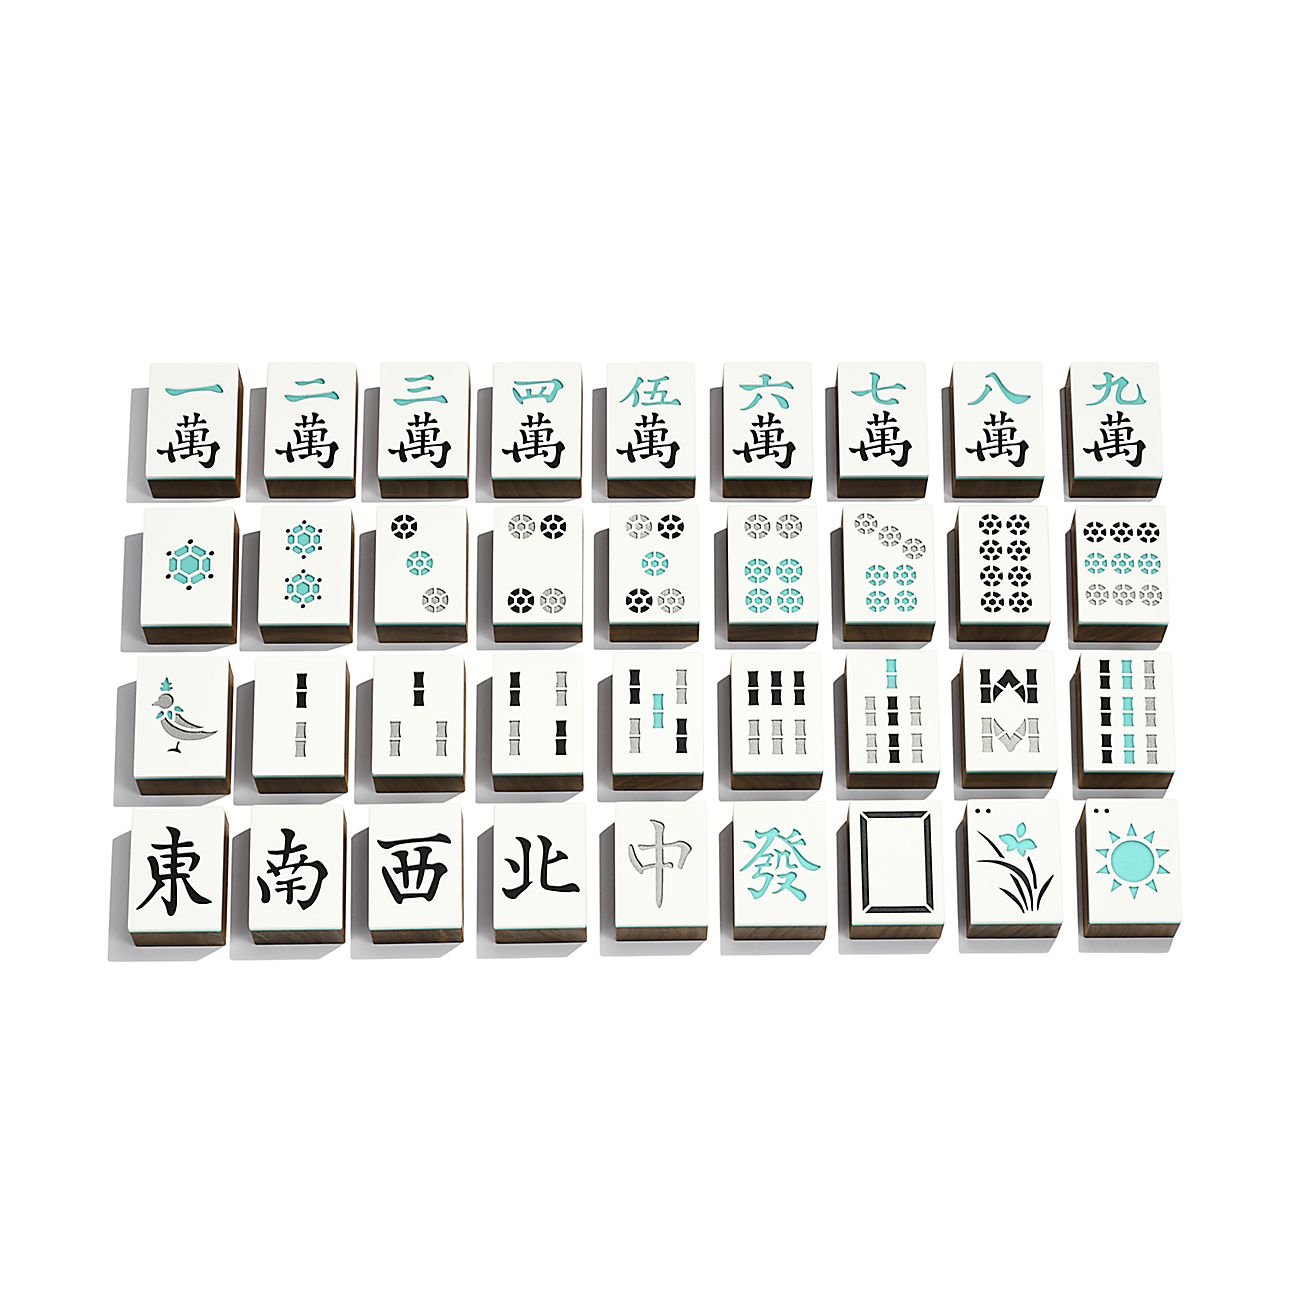 A Tiffany & Co Mahjong Set